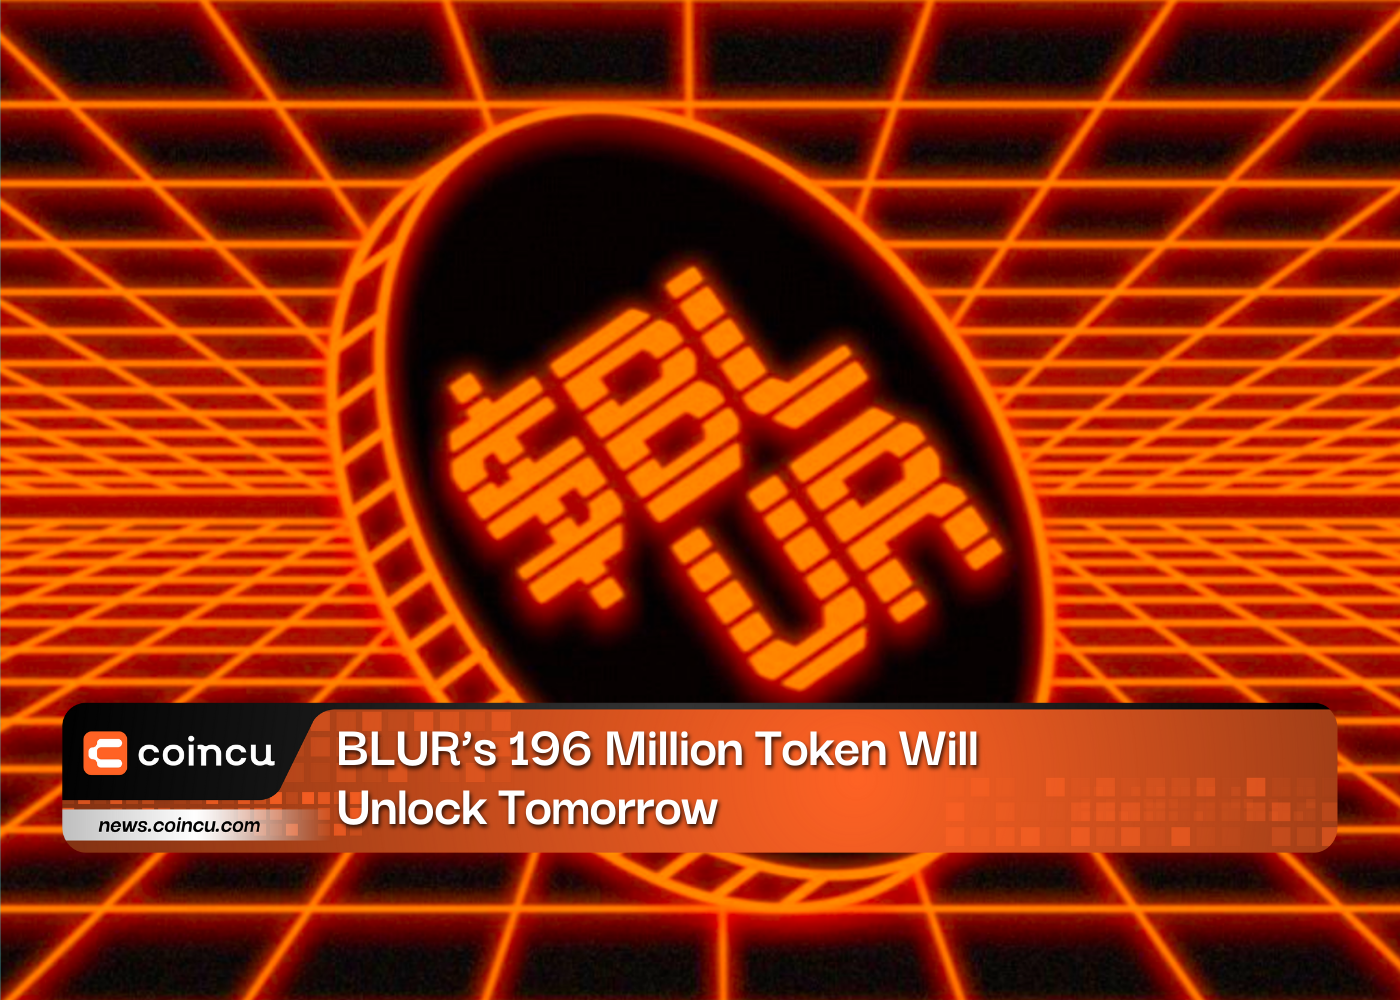 Caution: BLUR’s 196 Million Token Will Unlock Tomorrow